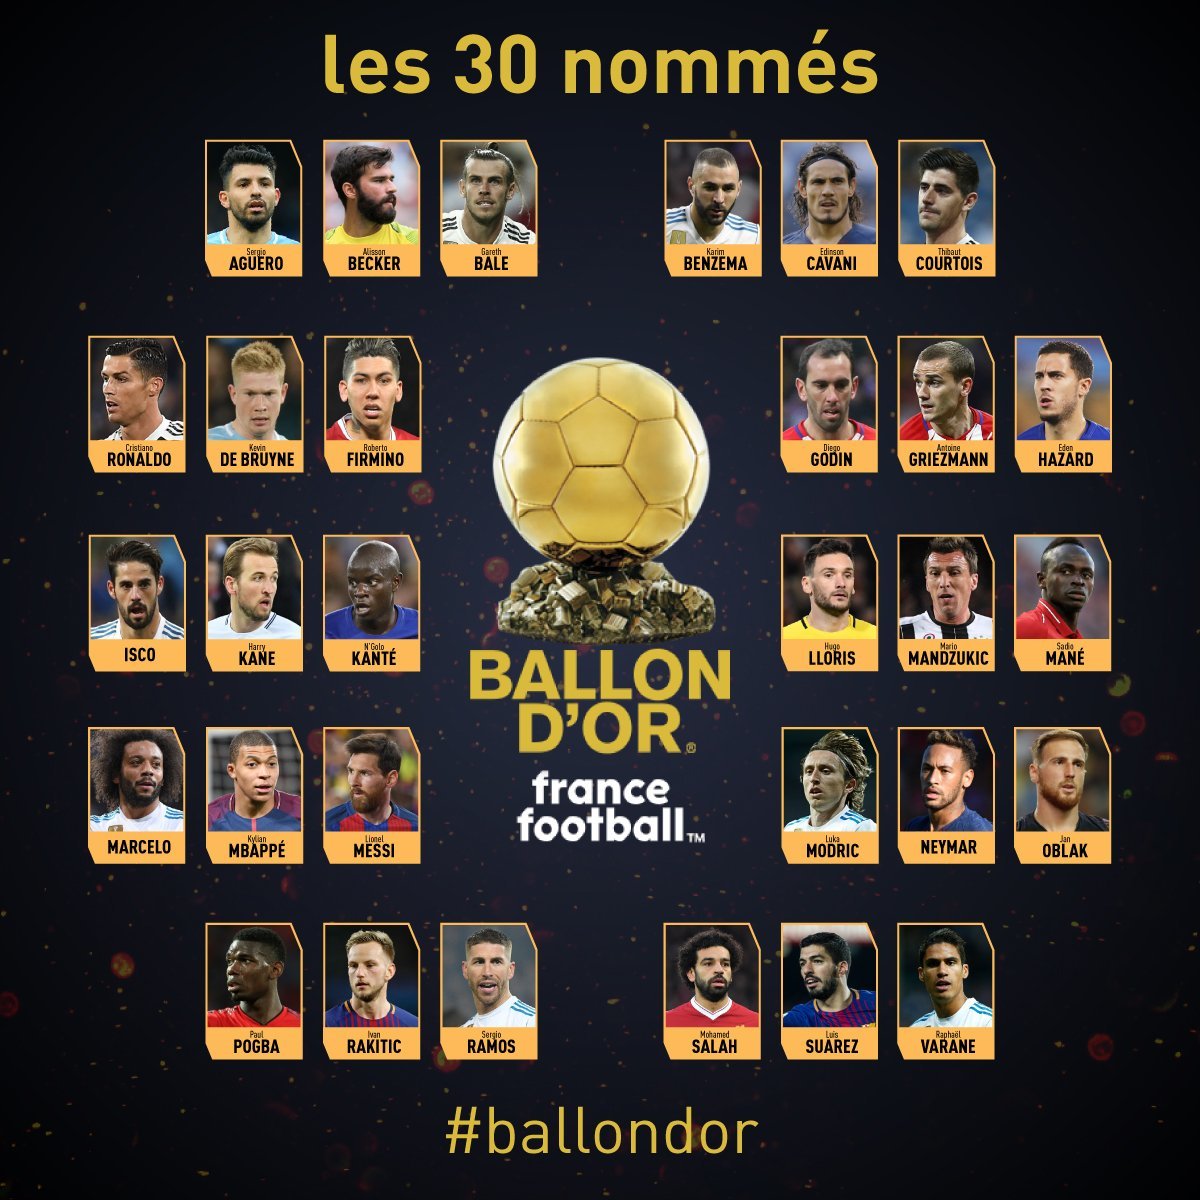 2018 Ballon d’Or